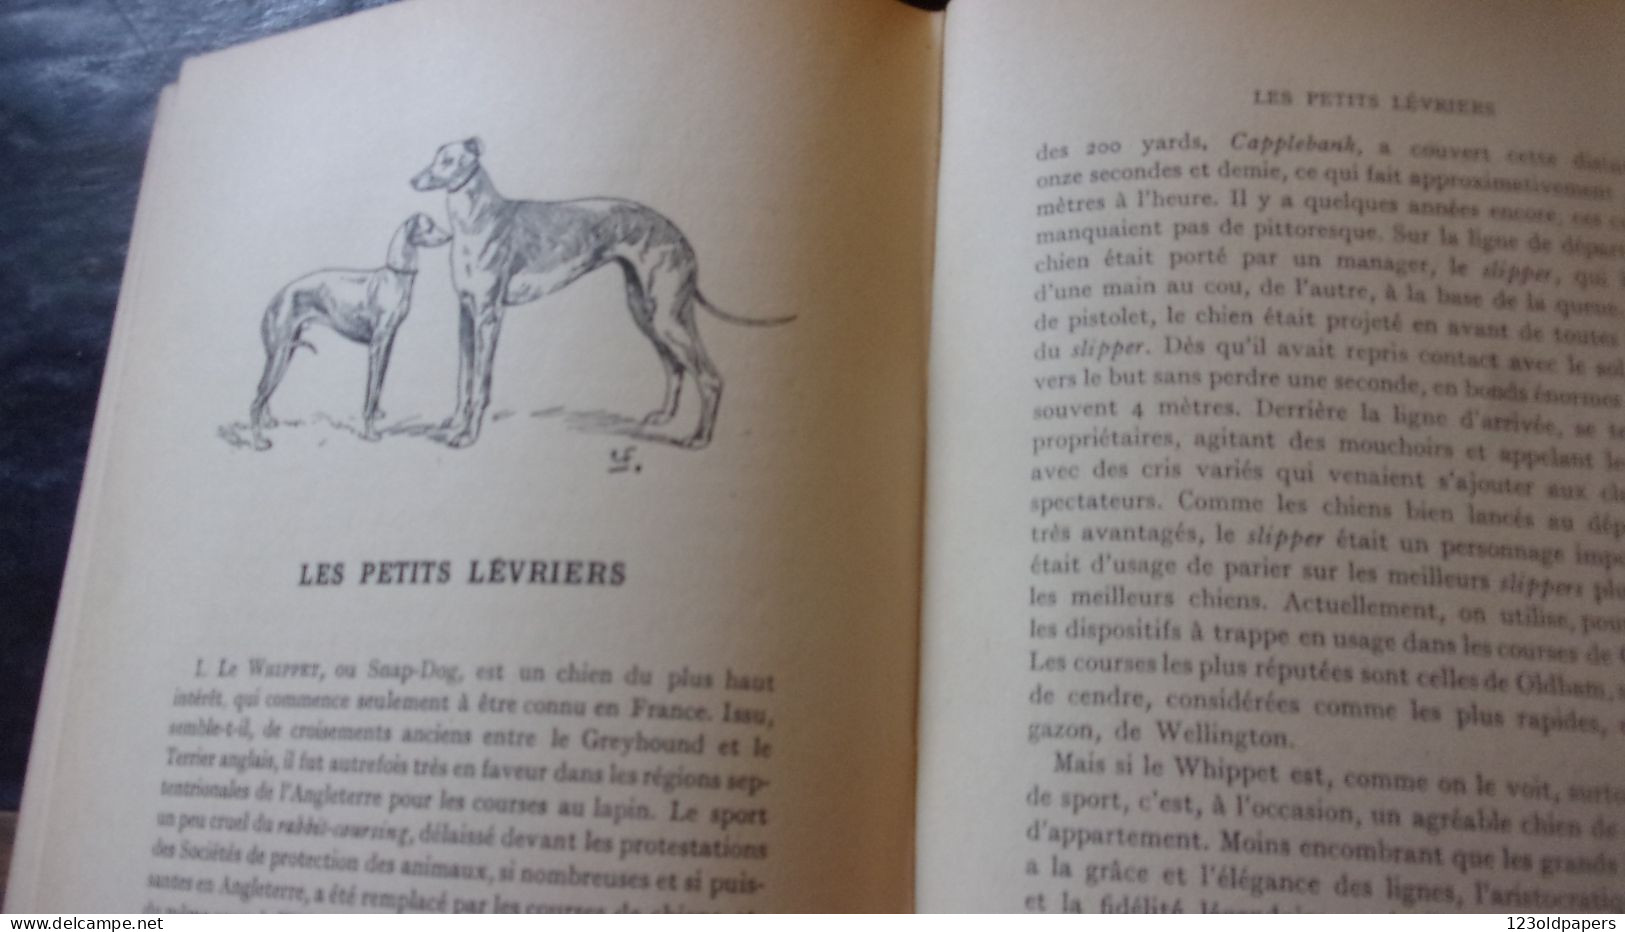 CHIENS DE BERGER - CHIENS DE GARDE -CHIENS D'AGREMENT. - ROBIN V. - 1933  / 275 PAGES FOX LEVRIER BARZOI CARLIN - Animales